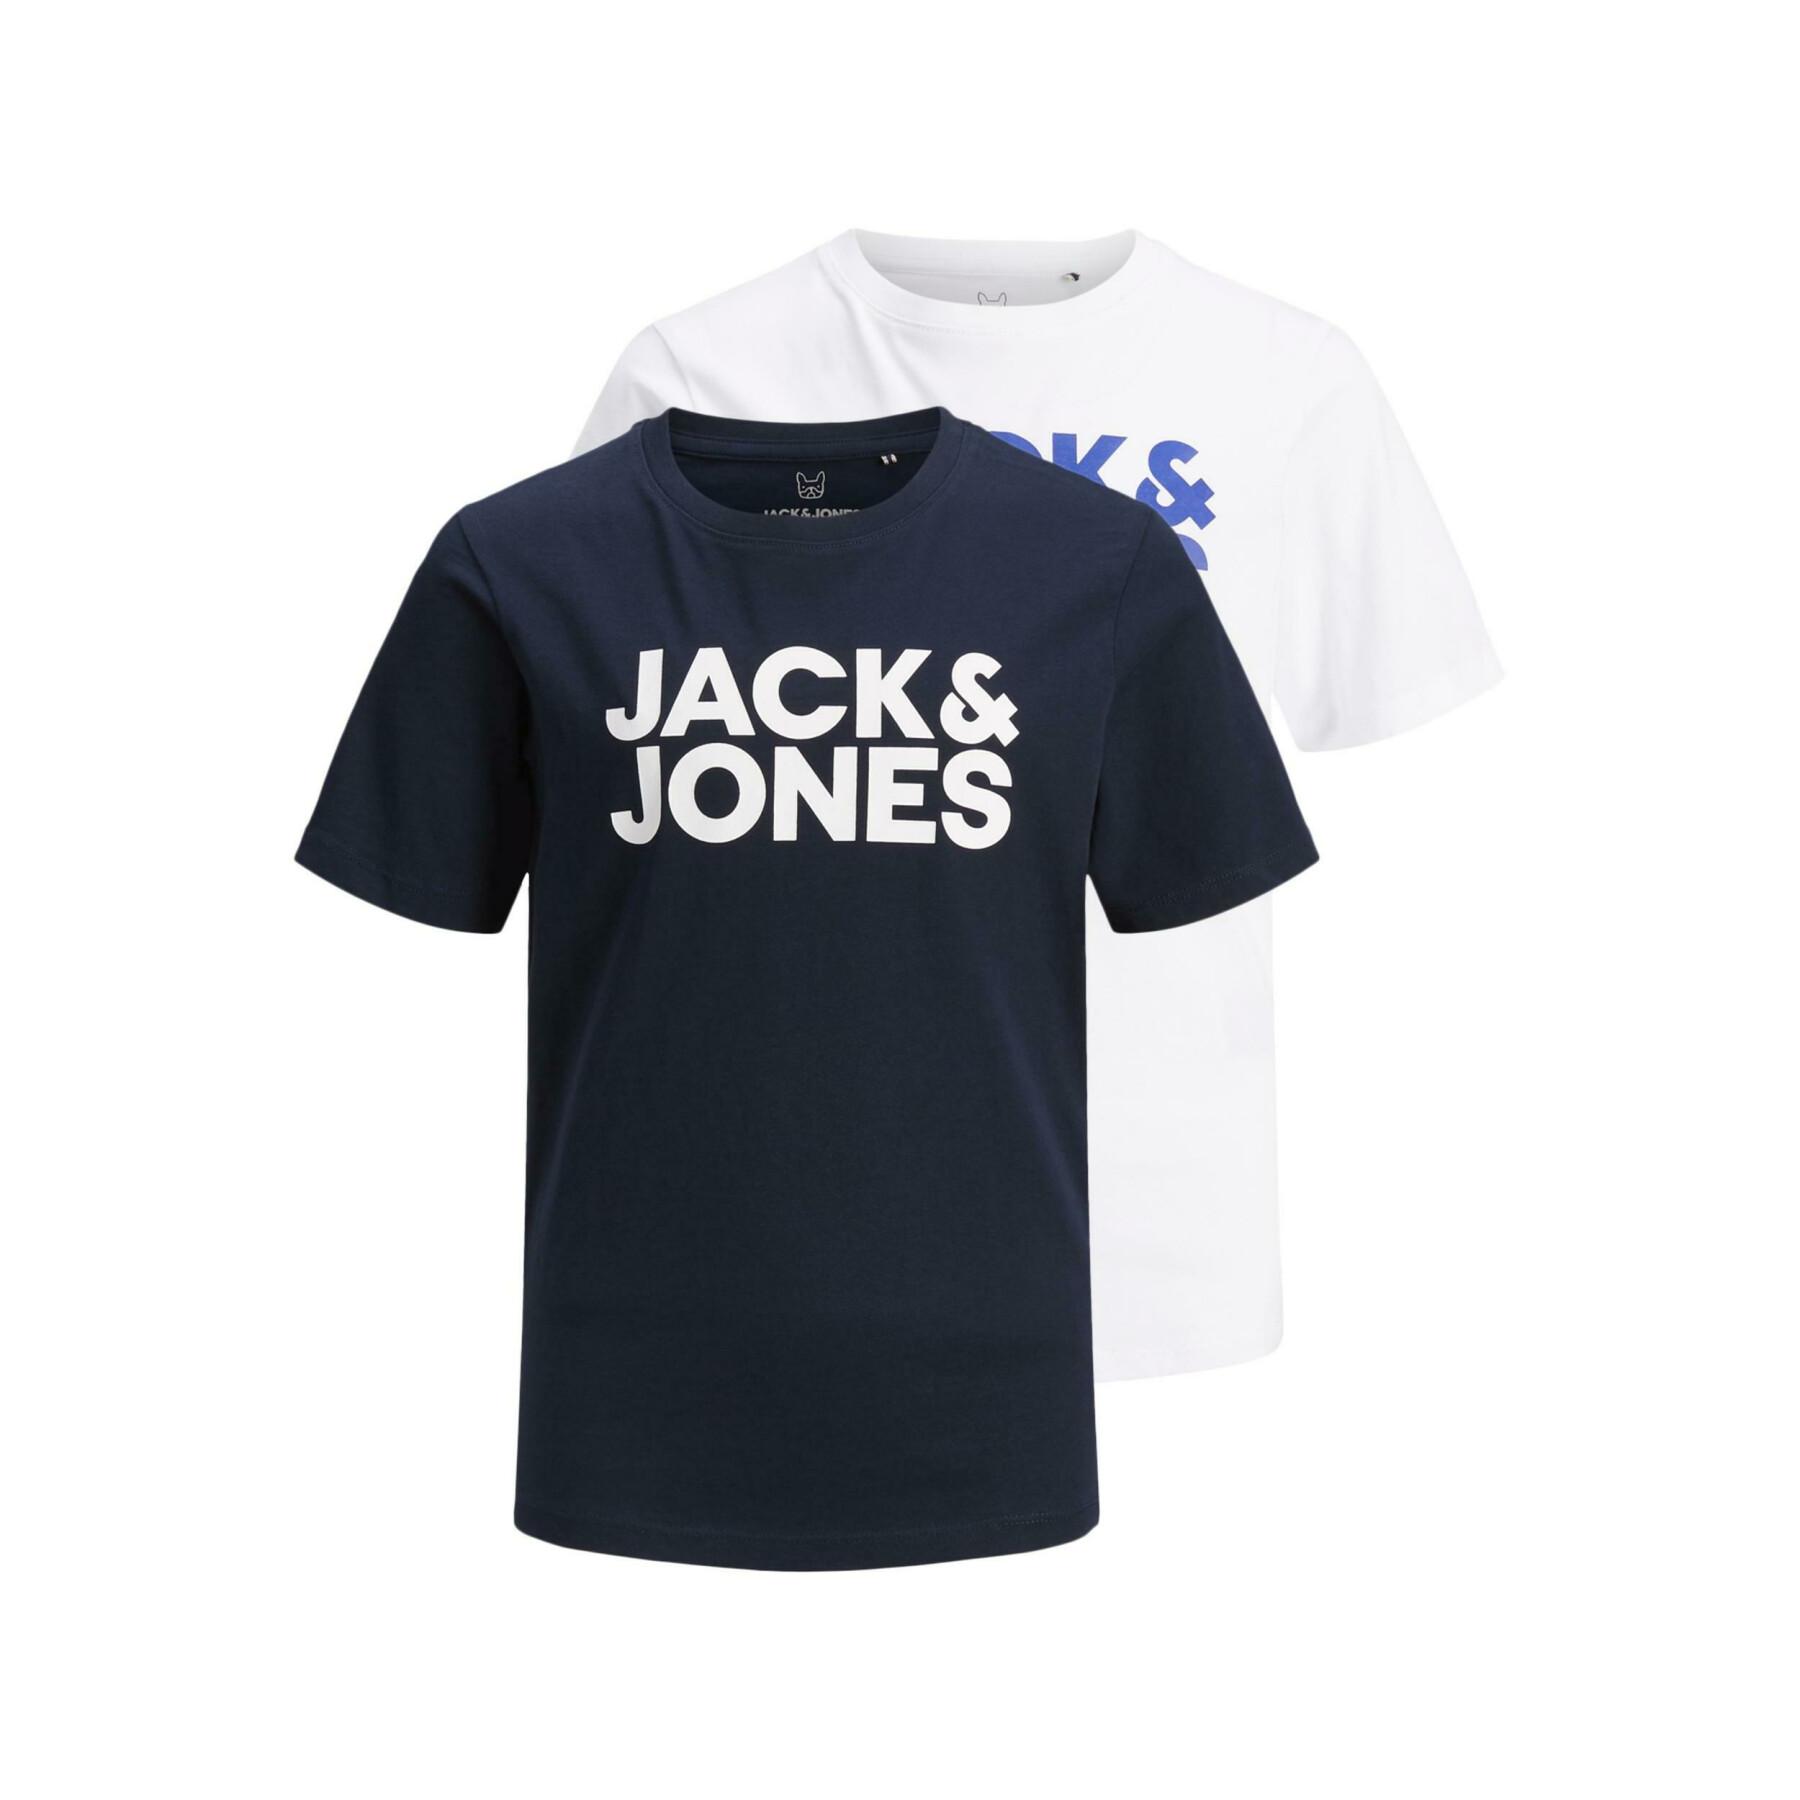 Lot de 2 t-shirts enfant Jack & Jones corp logo